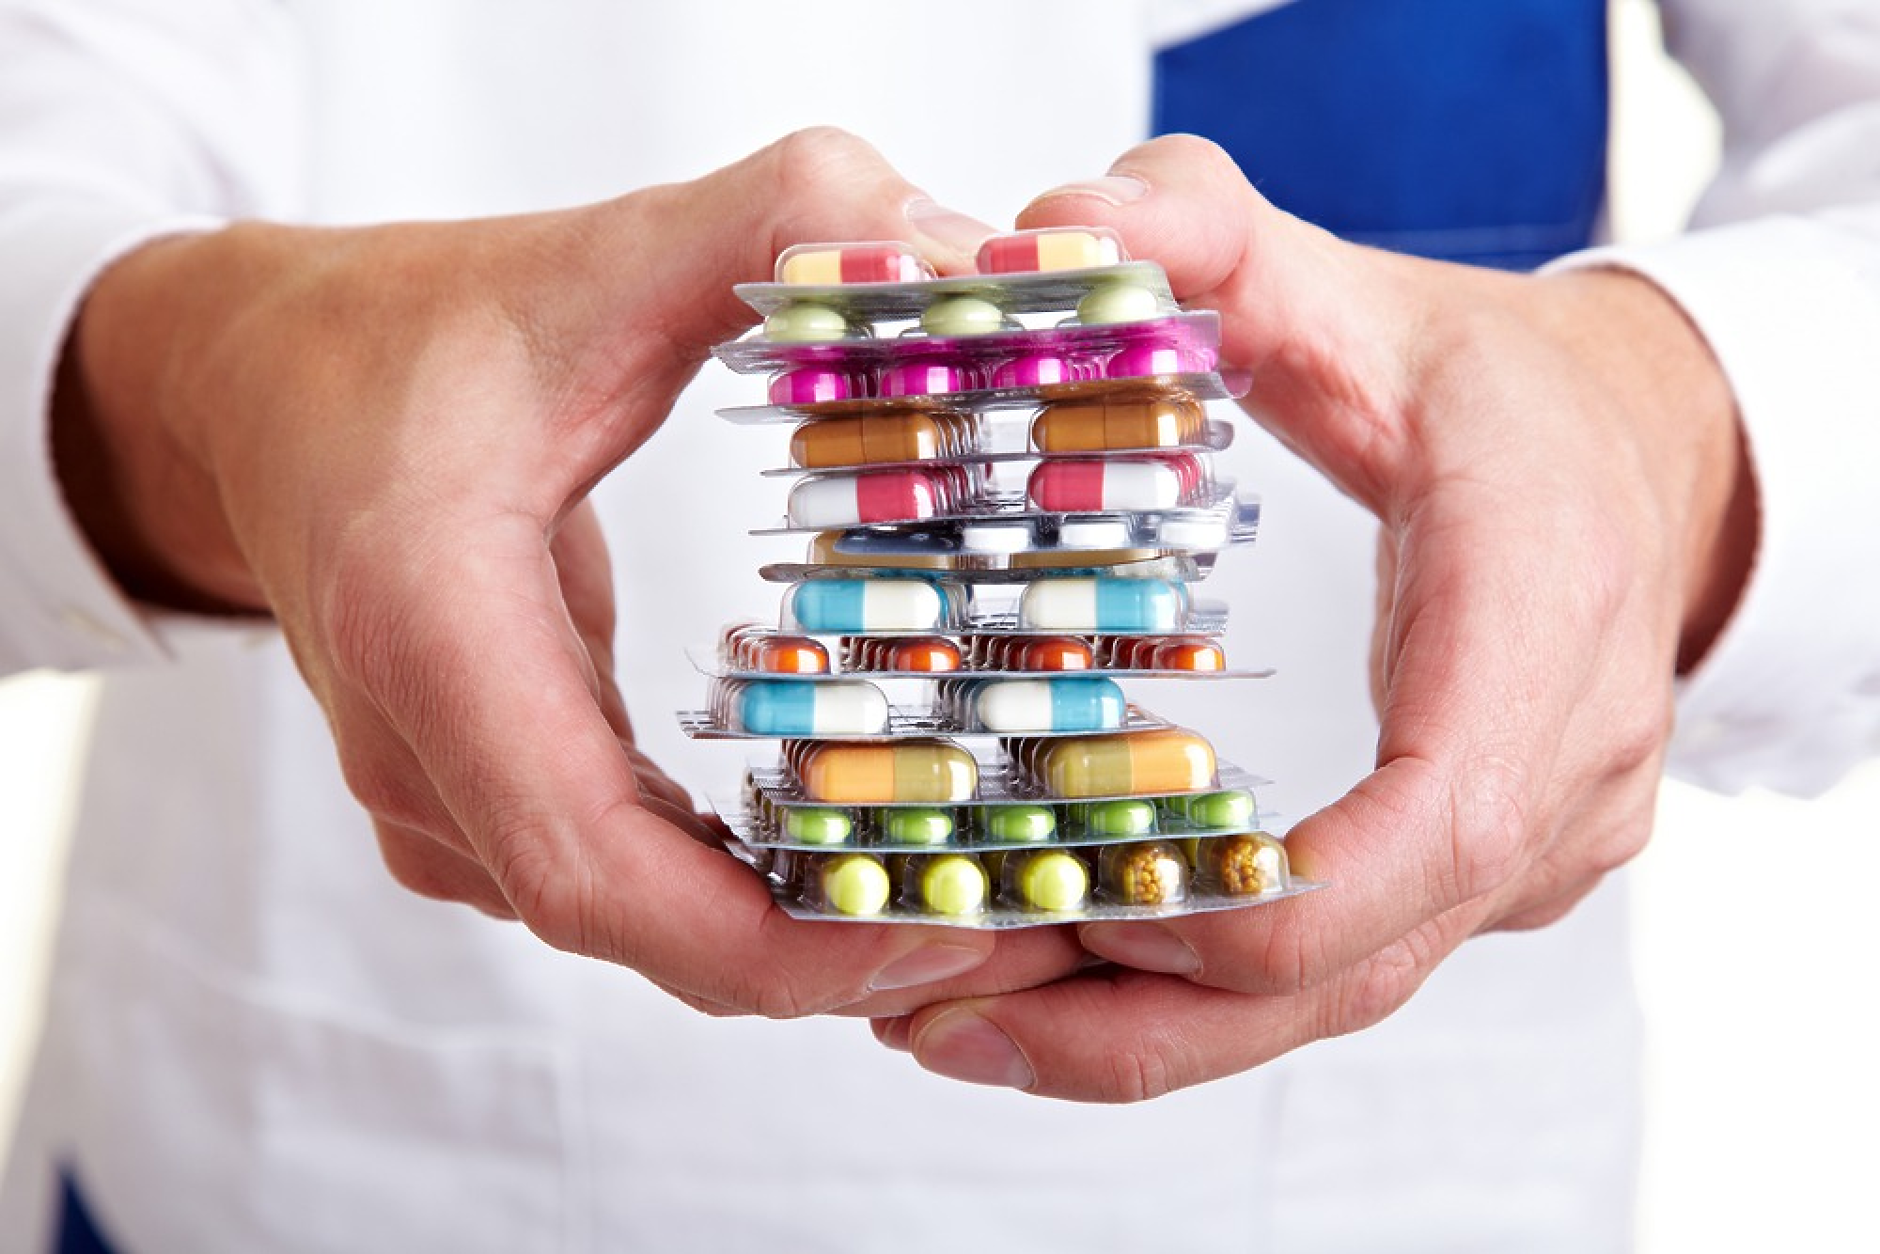 България дава 3 пъти повече пари за лекарства от средното за ЕС